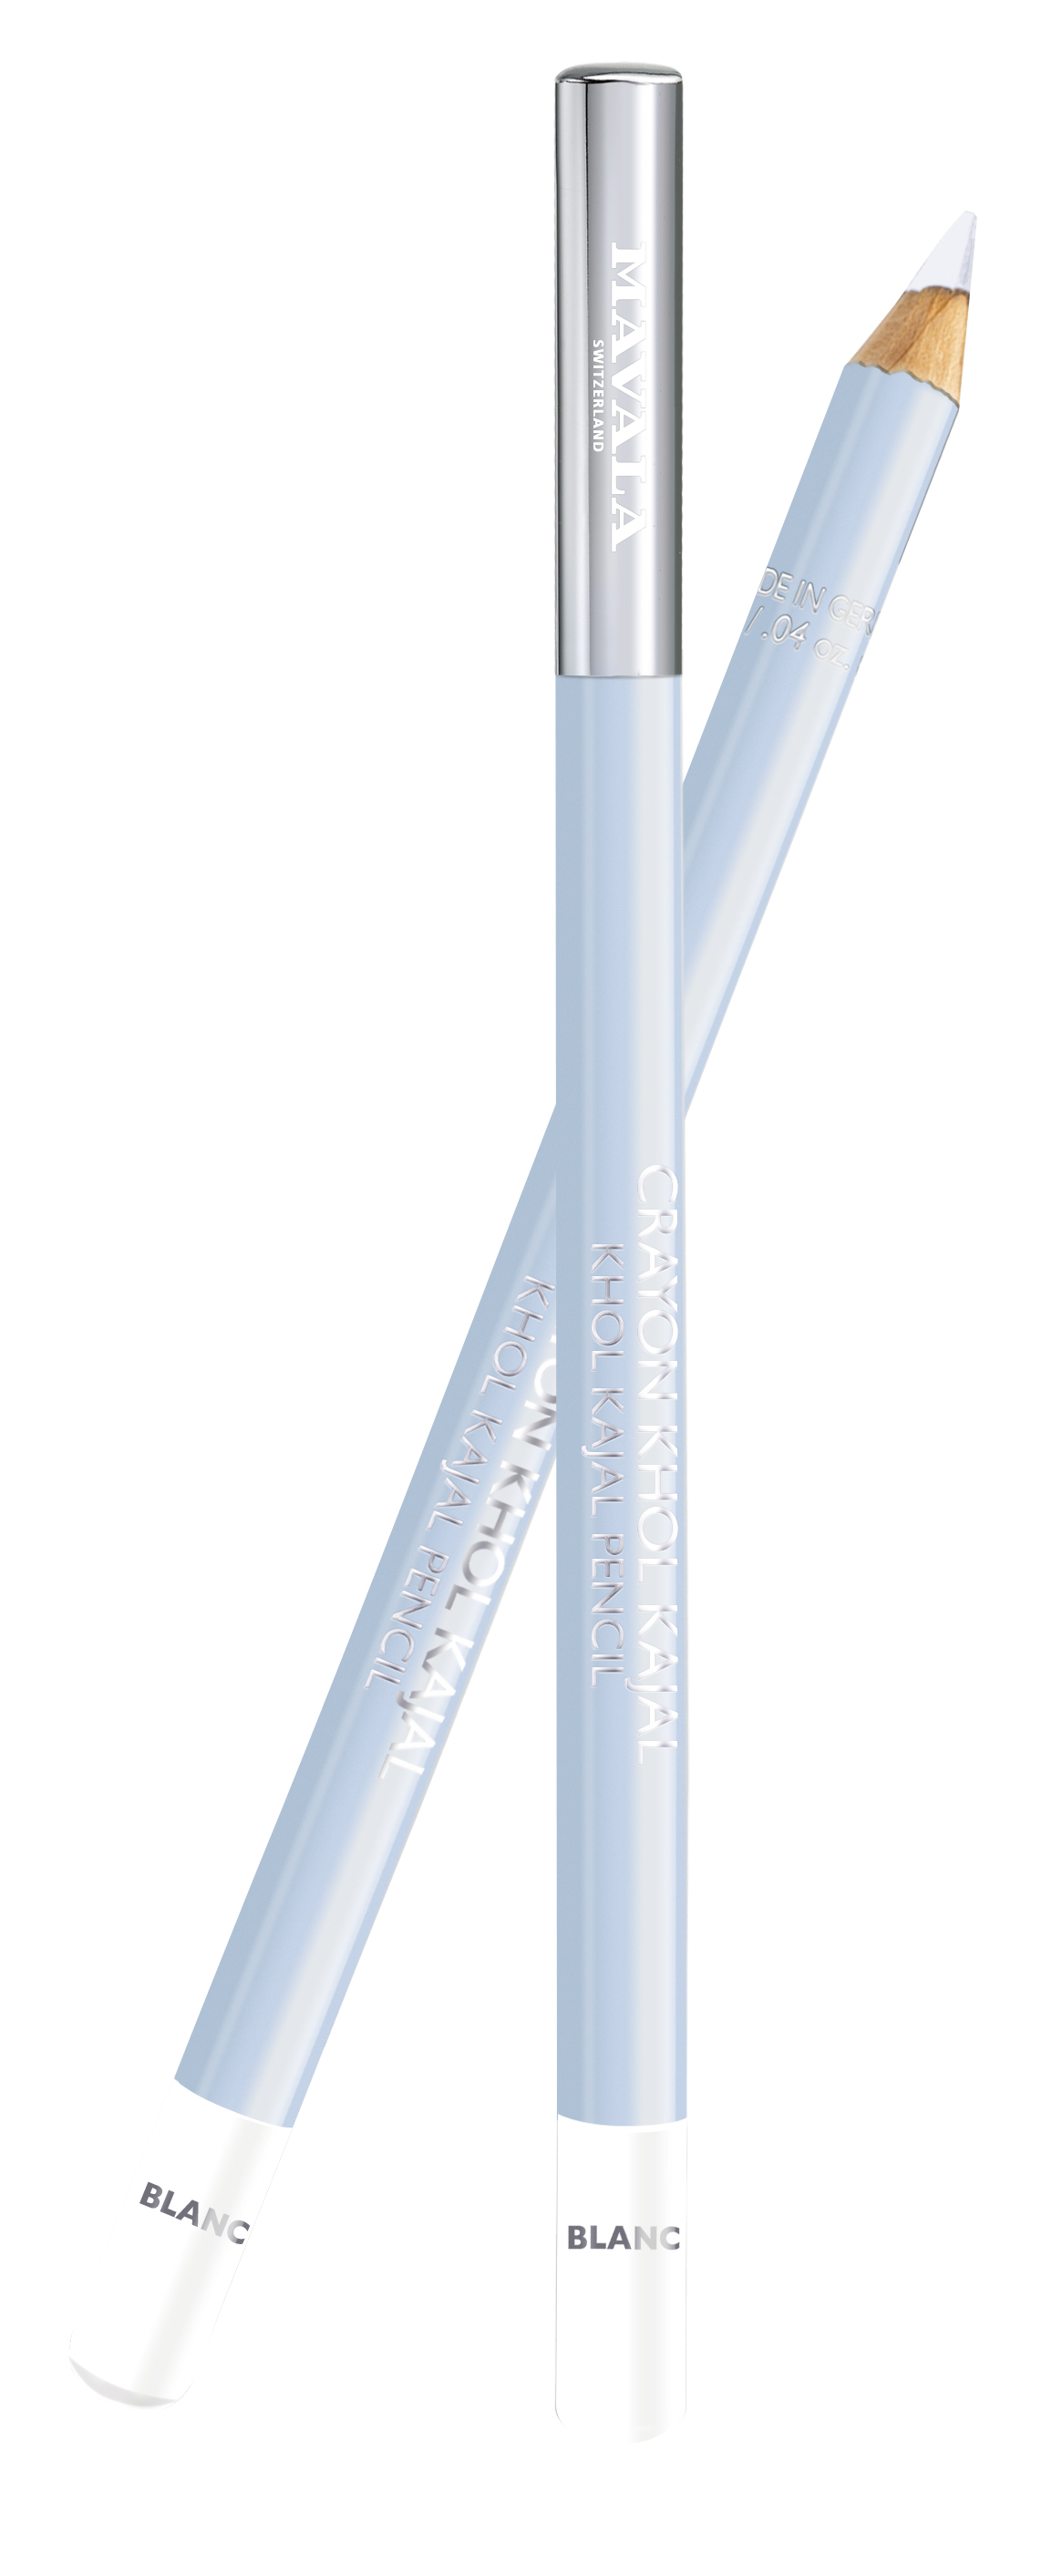 935.05  KHÔL KAJAL - Stift  - Blanc (weiß)  - Augenkontur-Stift für einen strahlend schönen Blick  